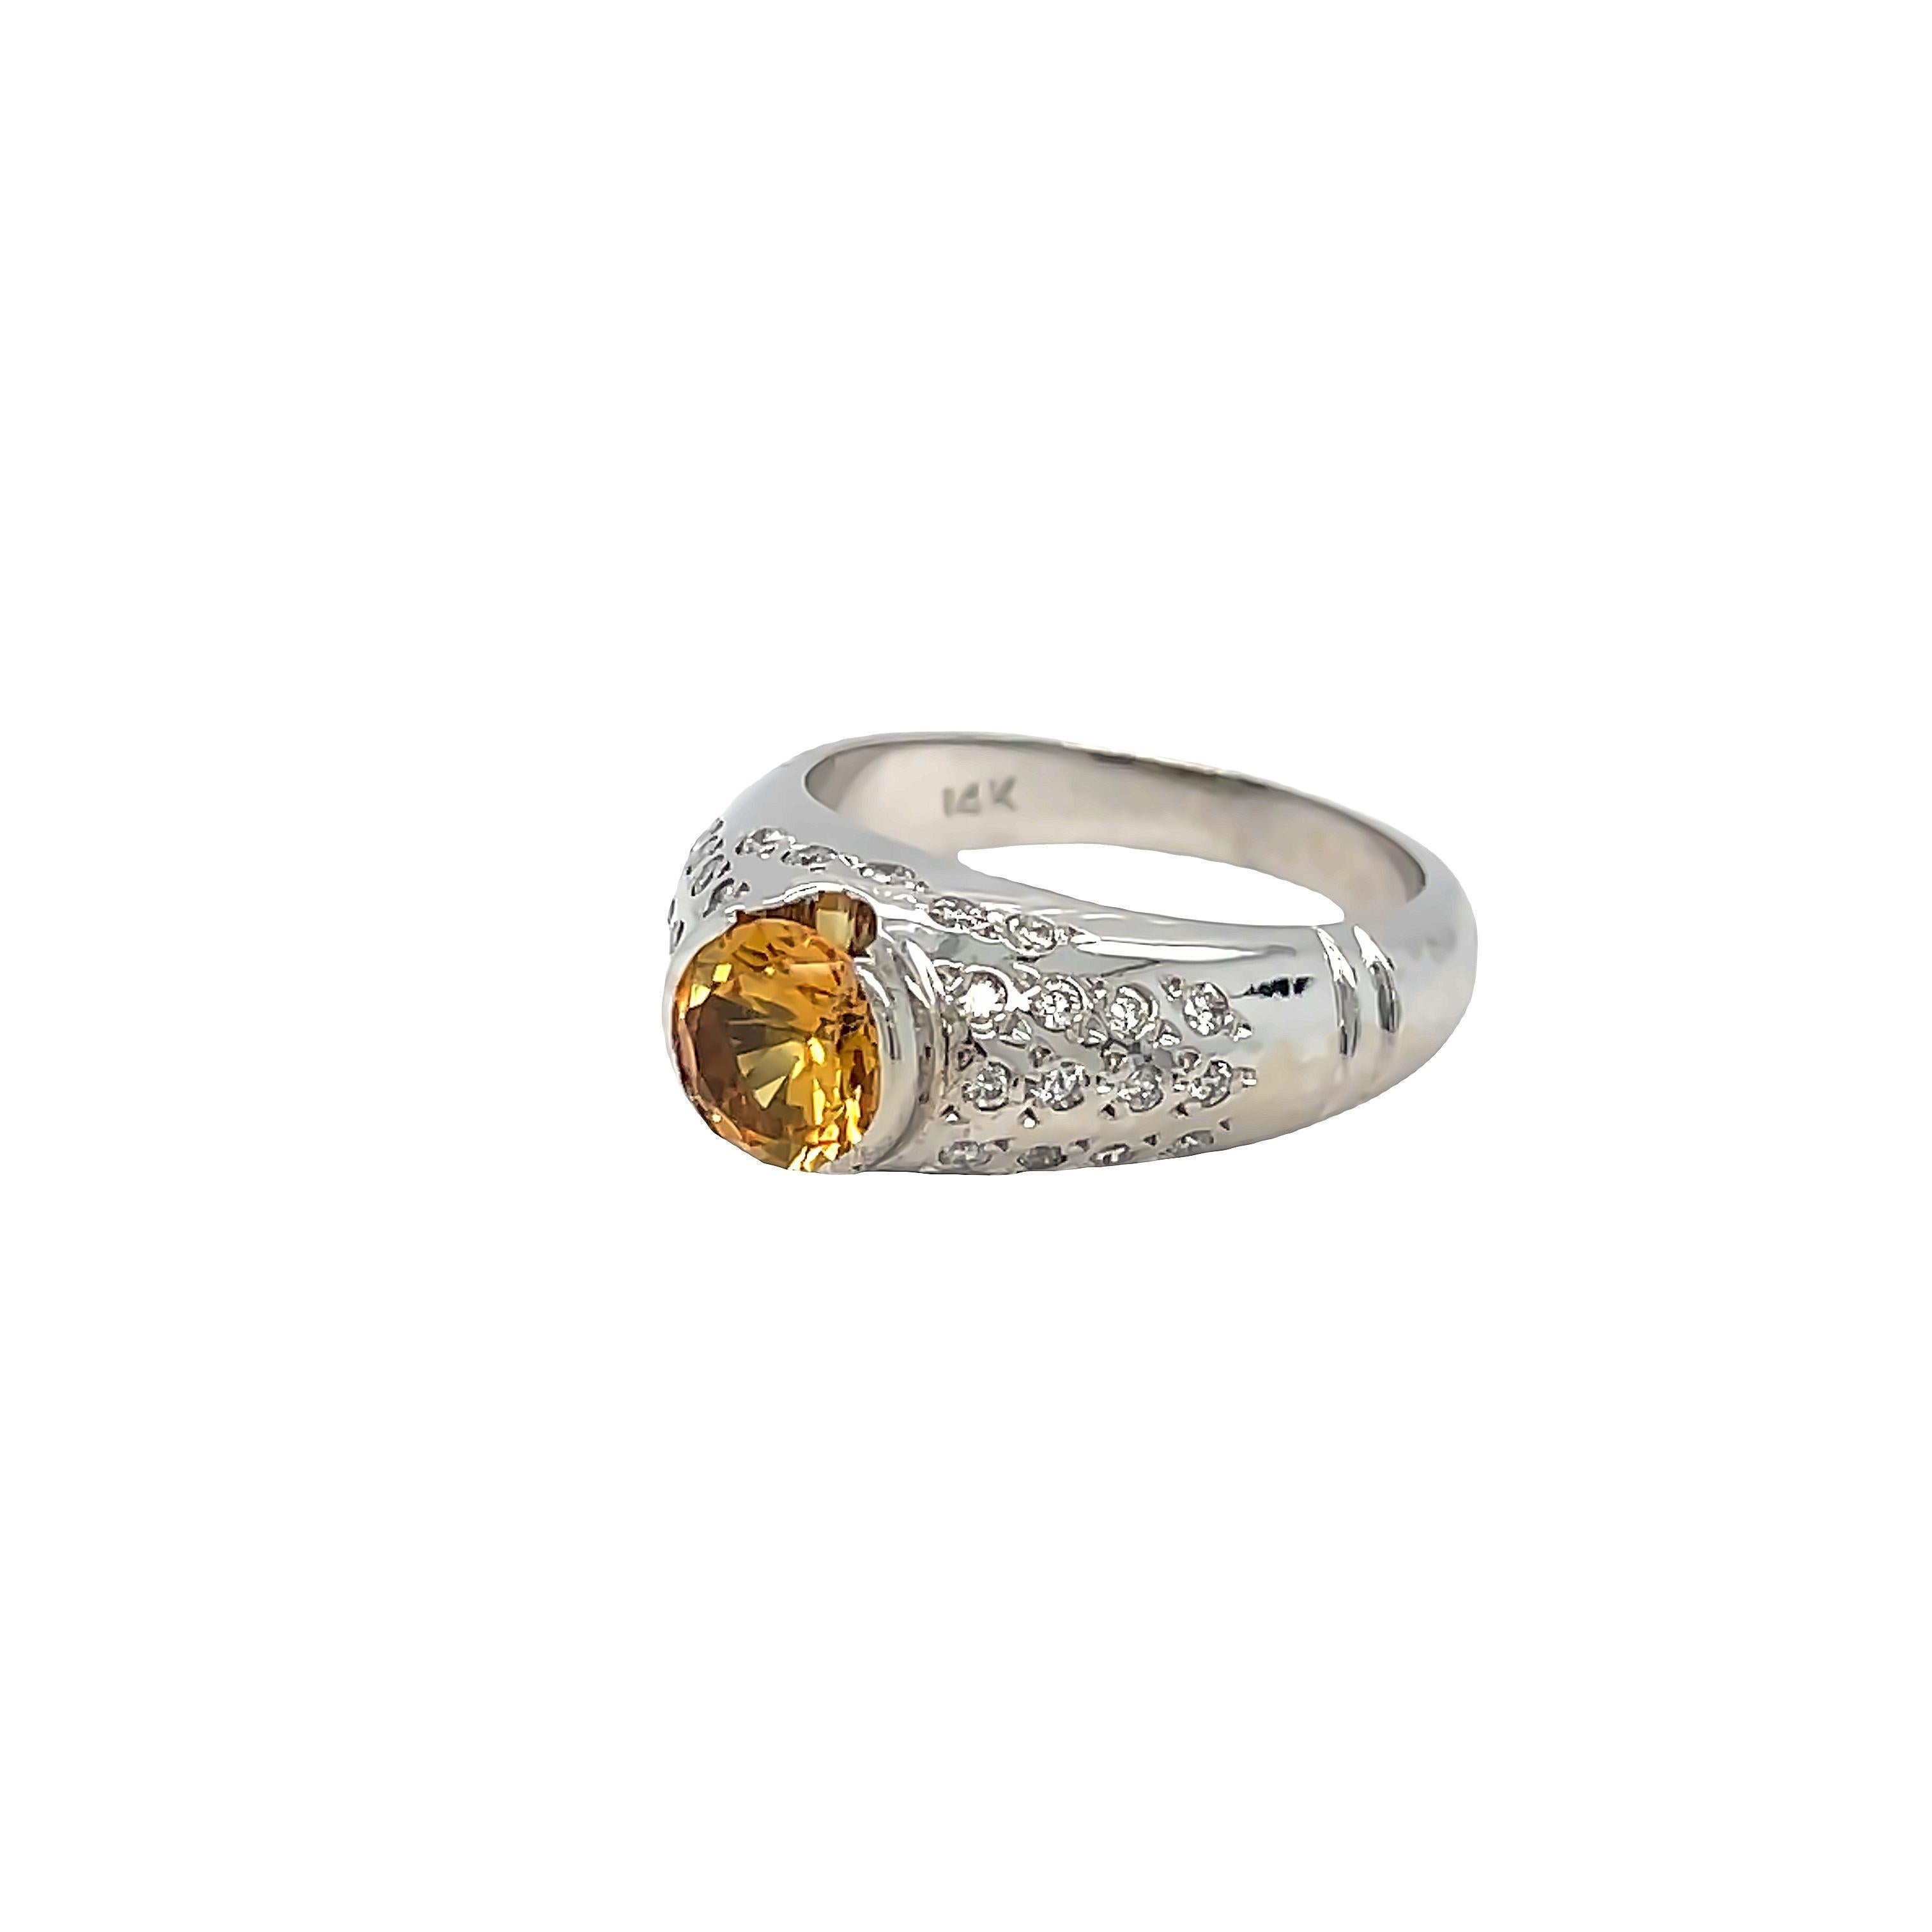 Dieser elegante und zeitgemäße Diamantring aus 14 Karat Weißgold ist mit einem atemberaubenden runden Citrin von ca. 1,30 Karat besetzt. Der bestrahlte Citrin ist in einer erhabenen Halbkugel-Fassung wunderschön in Szene gesetzt, die durch eine